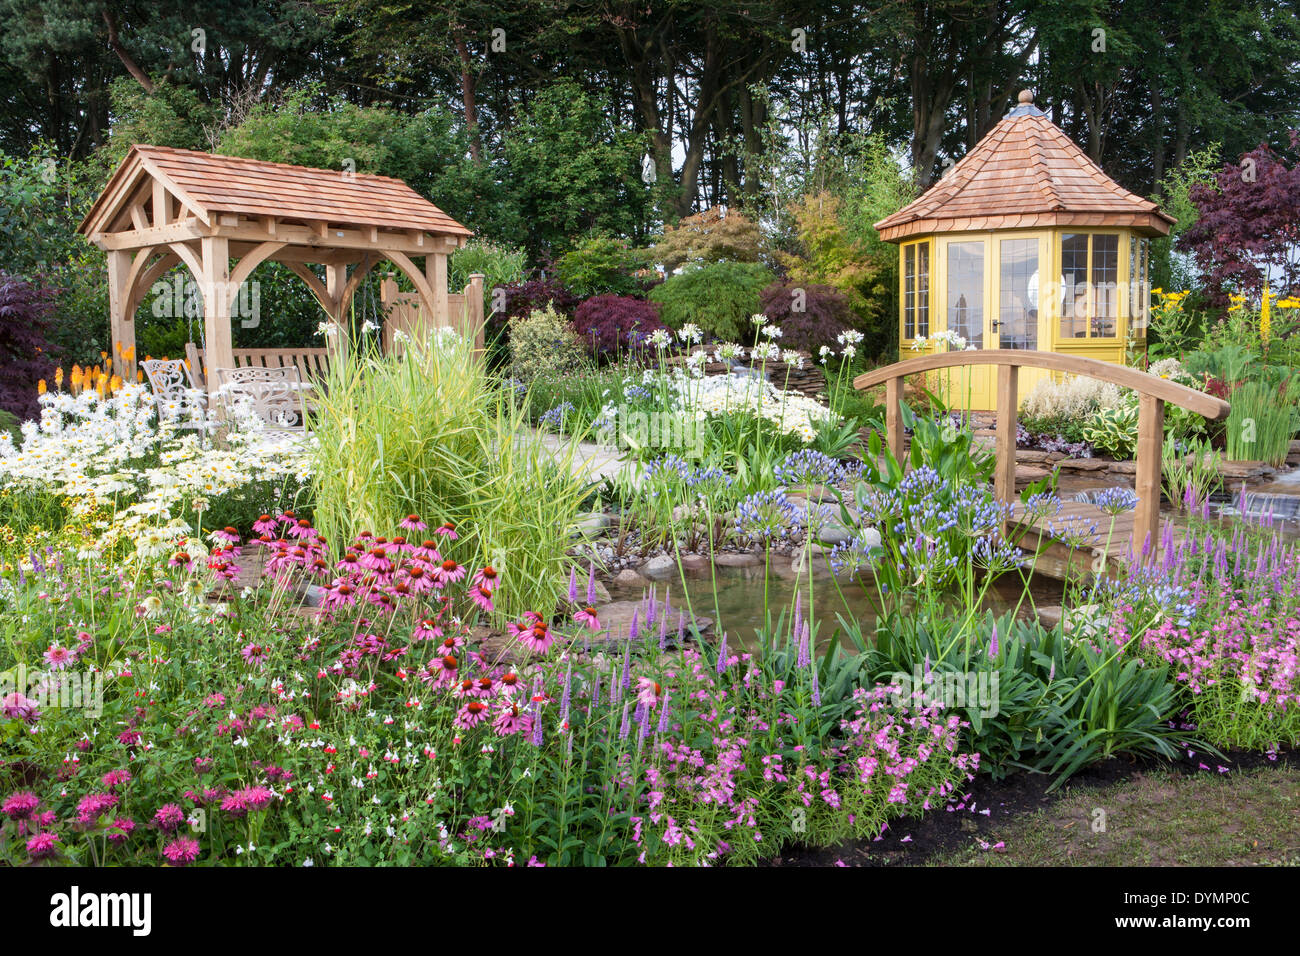 Tonnelle de jardin de campagne anglaise en été avec pont Summerhouse maison d'été cabane petit étang d'eau disposent d'une frontière fleurie colorée mélangée Royaume-Uni Banque D'Images